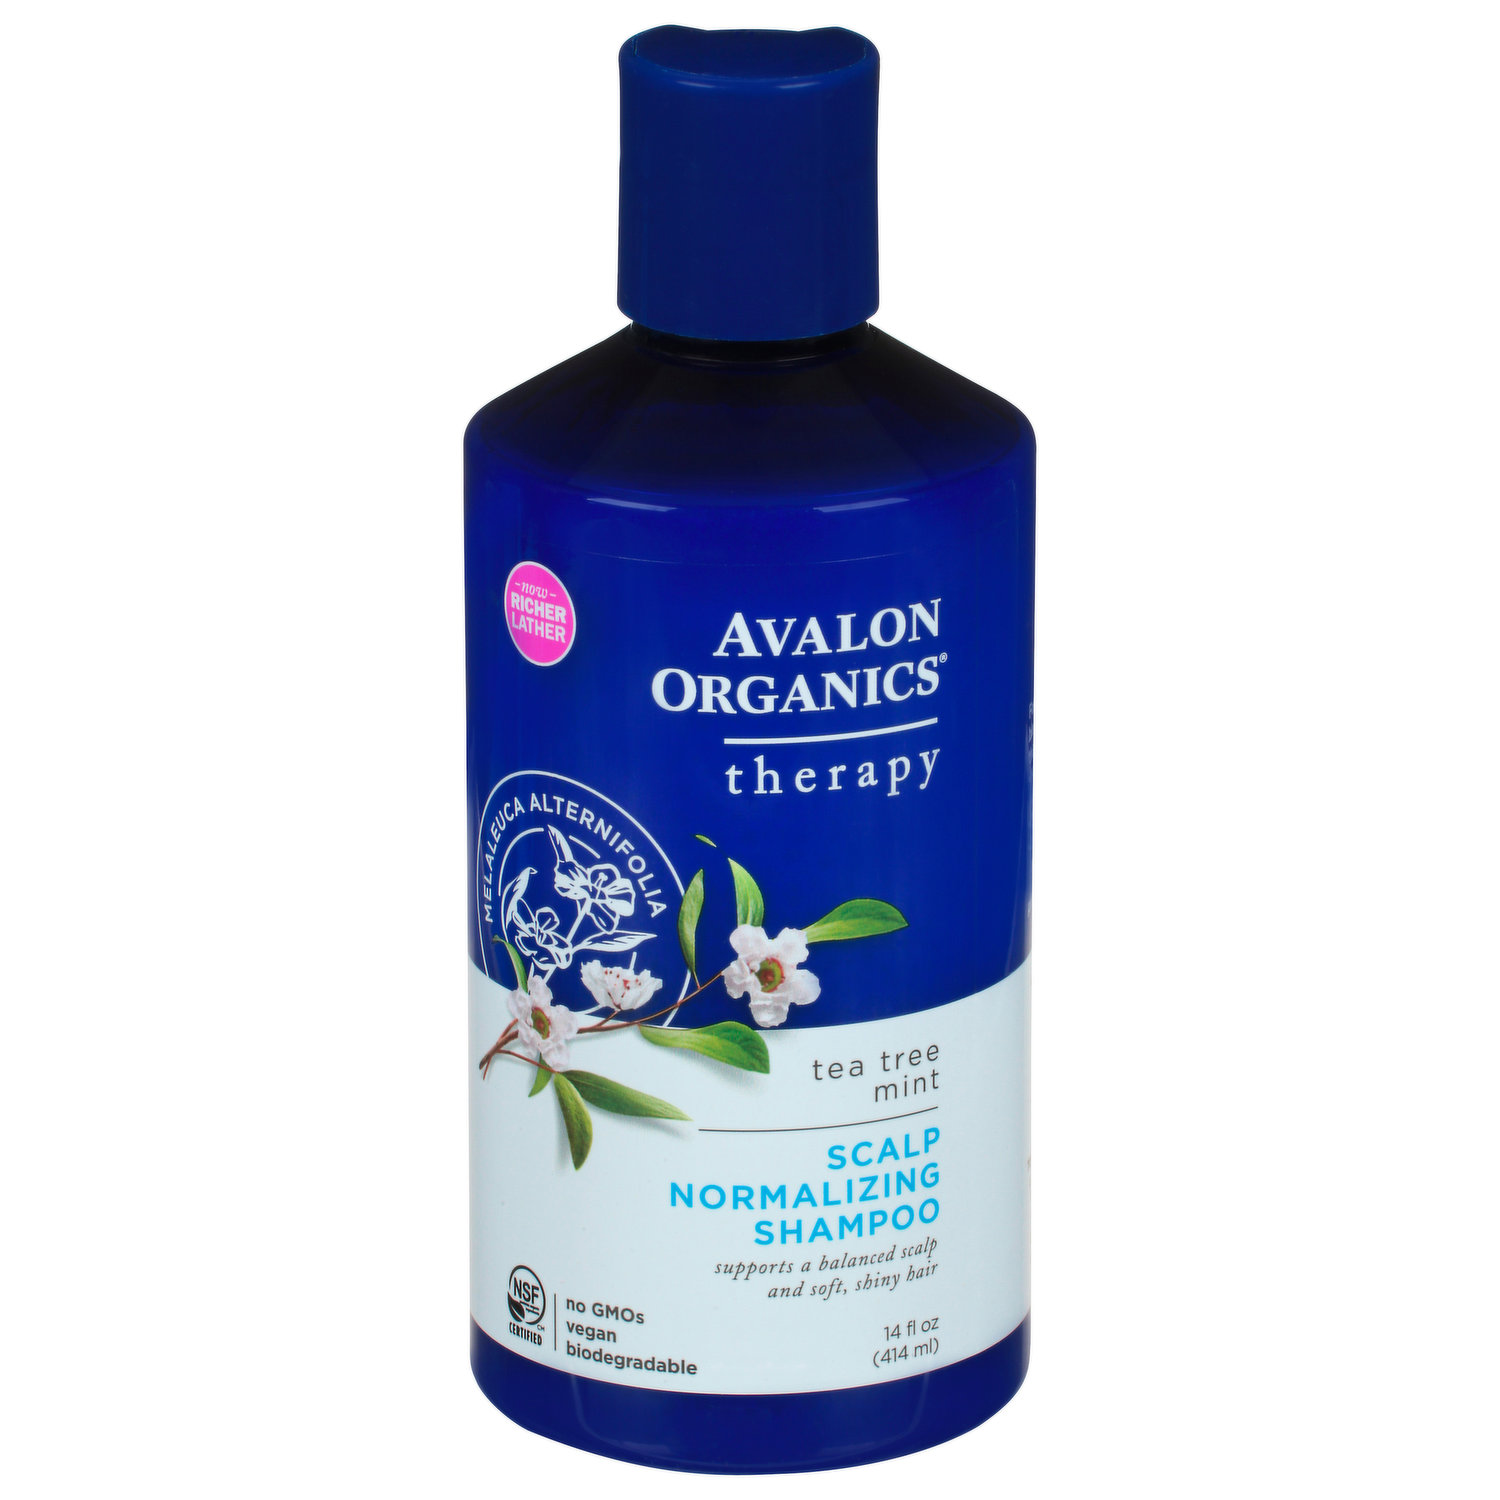 Avalon Organics Shampoo, Mint, Normalizing